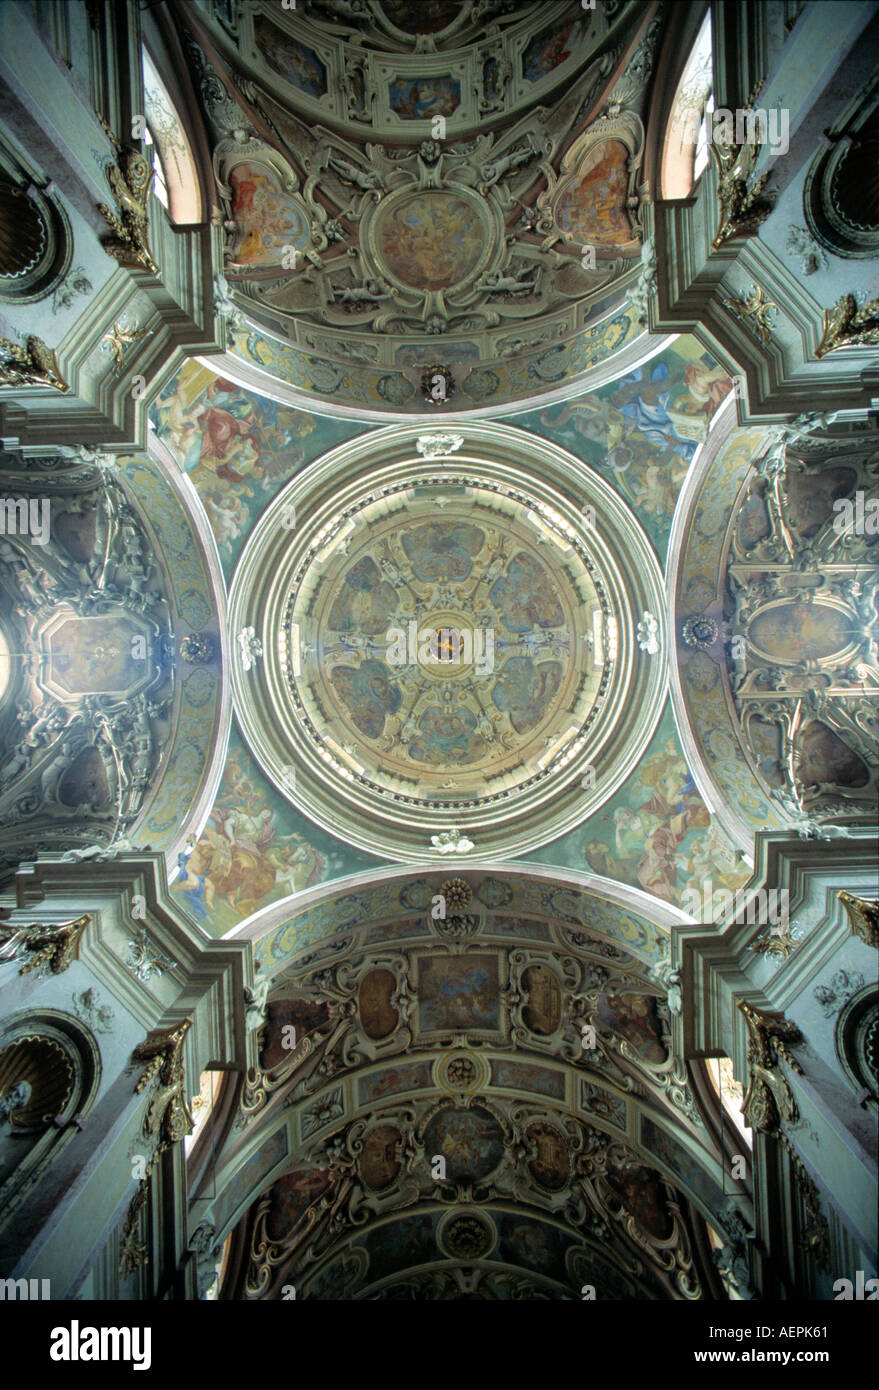 Olomouc/Olmütz-Heiligenberg, Kloster und Wallfahrtskirche Mariäe Heimsuchung, Gewölbe in der Vierungskuppel Foto Stock